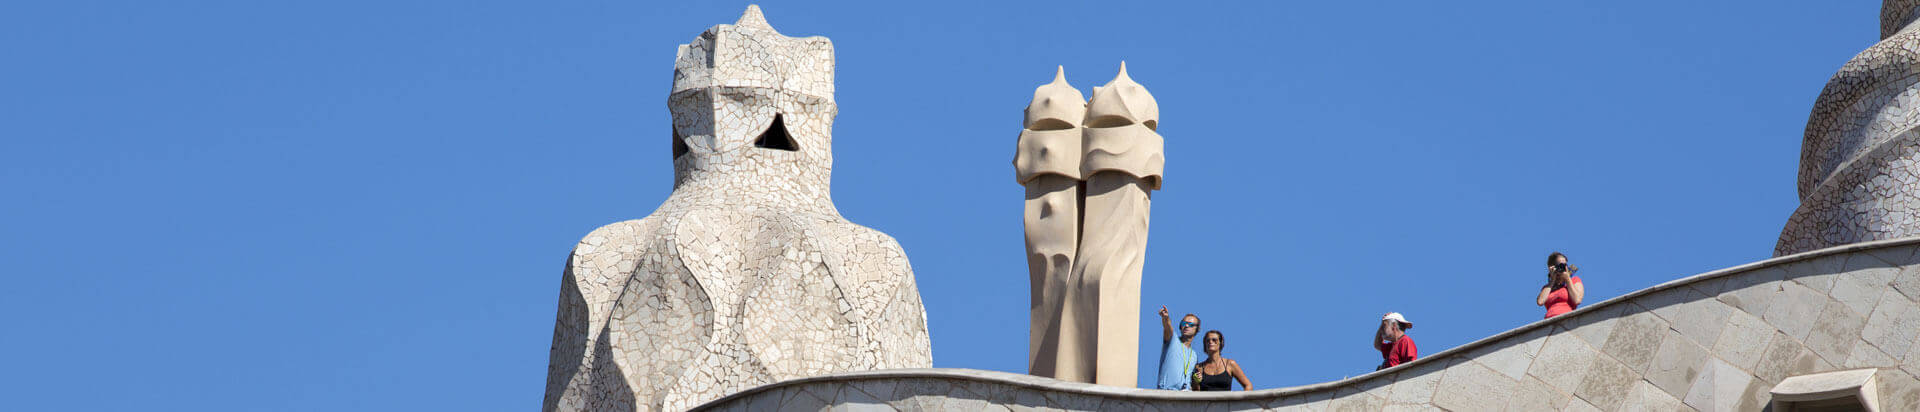 Activitats i exposicions agenda La Pedrera (Casa Milà) de Gaudí a Barcelona